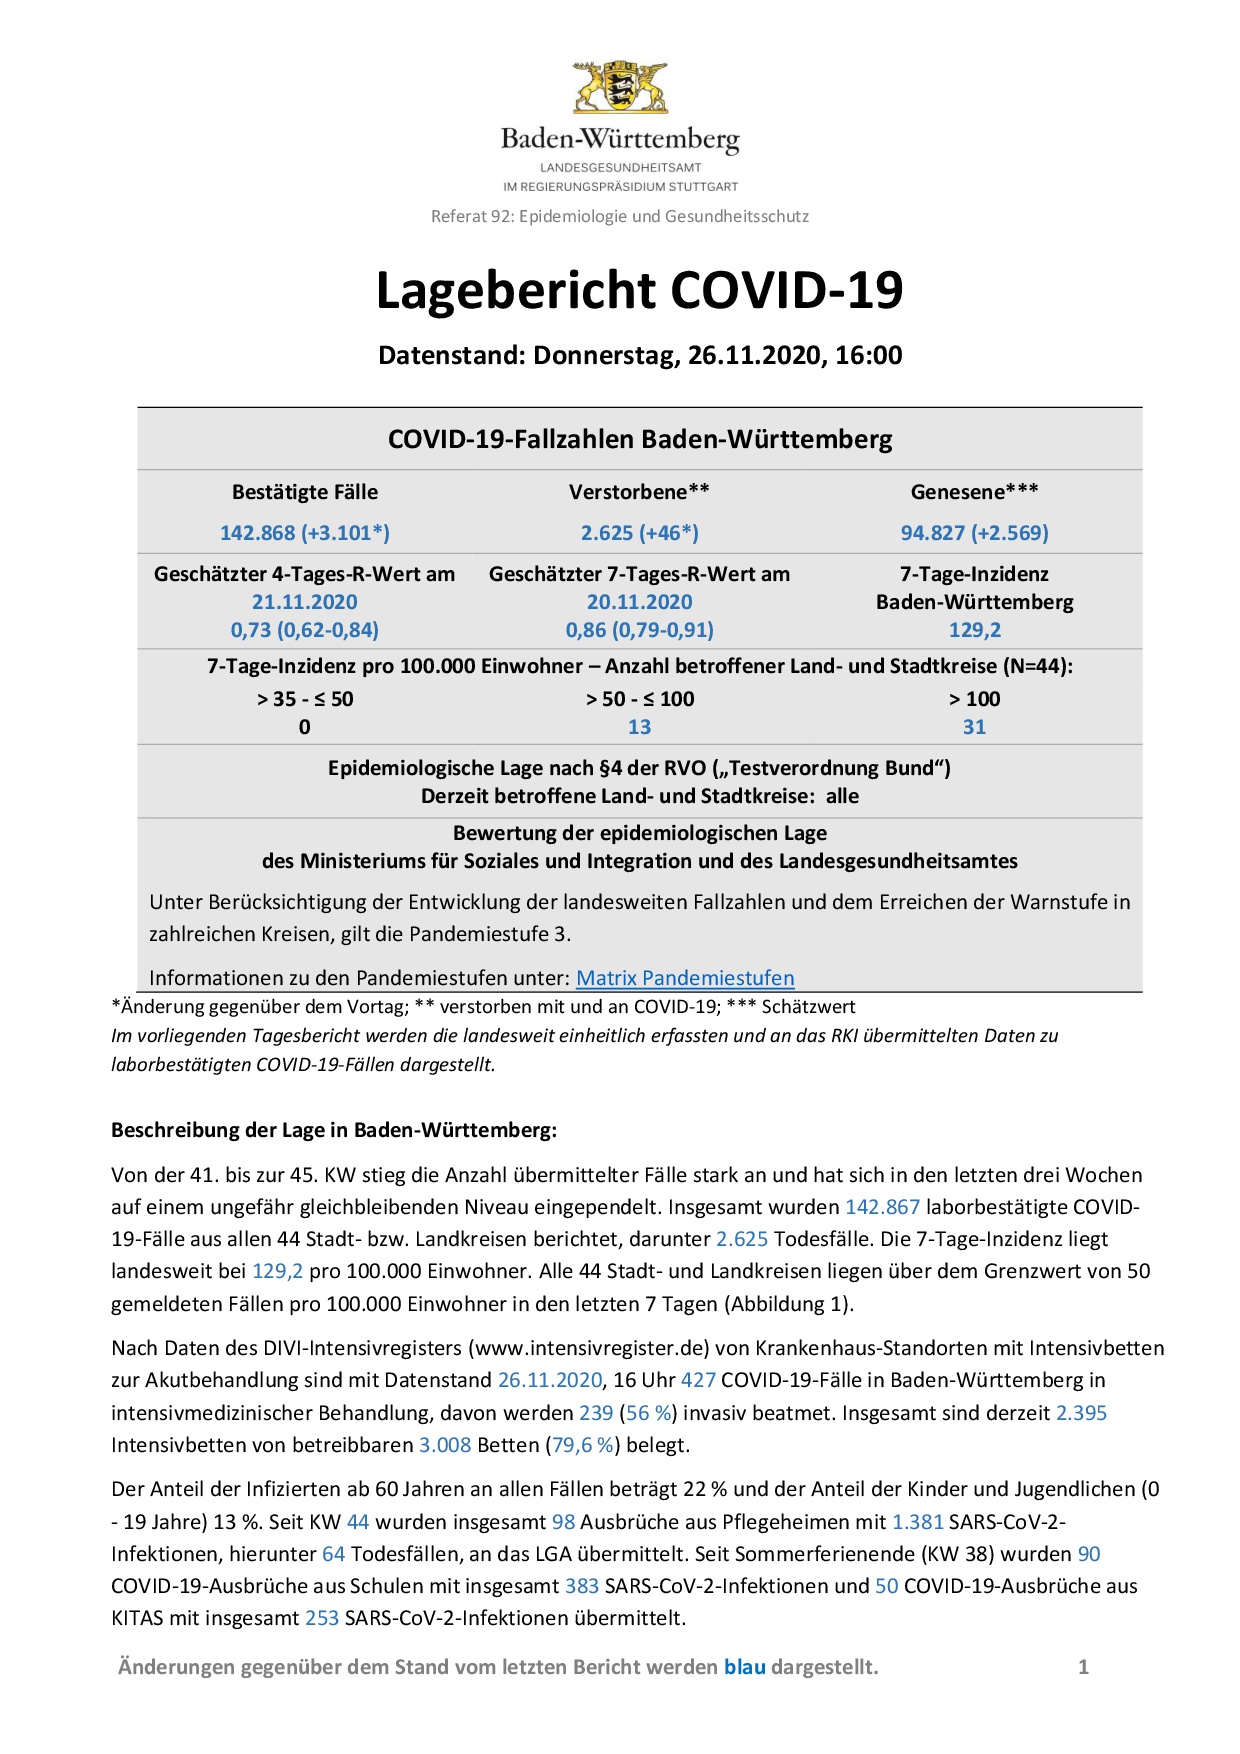 COVID-19 Tagesbericht (26.11.2020) des Landesgesundheitsamts Baden-Württemberg – (ausführlicher)